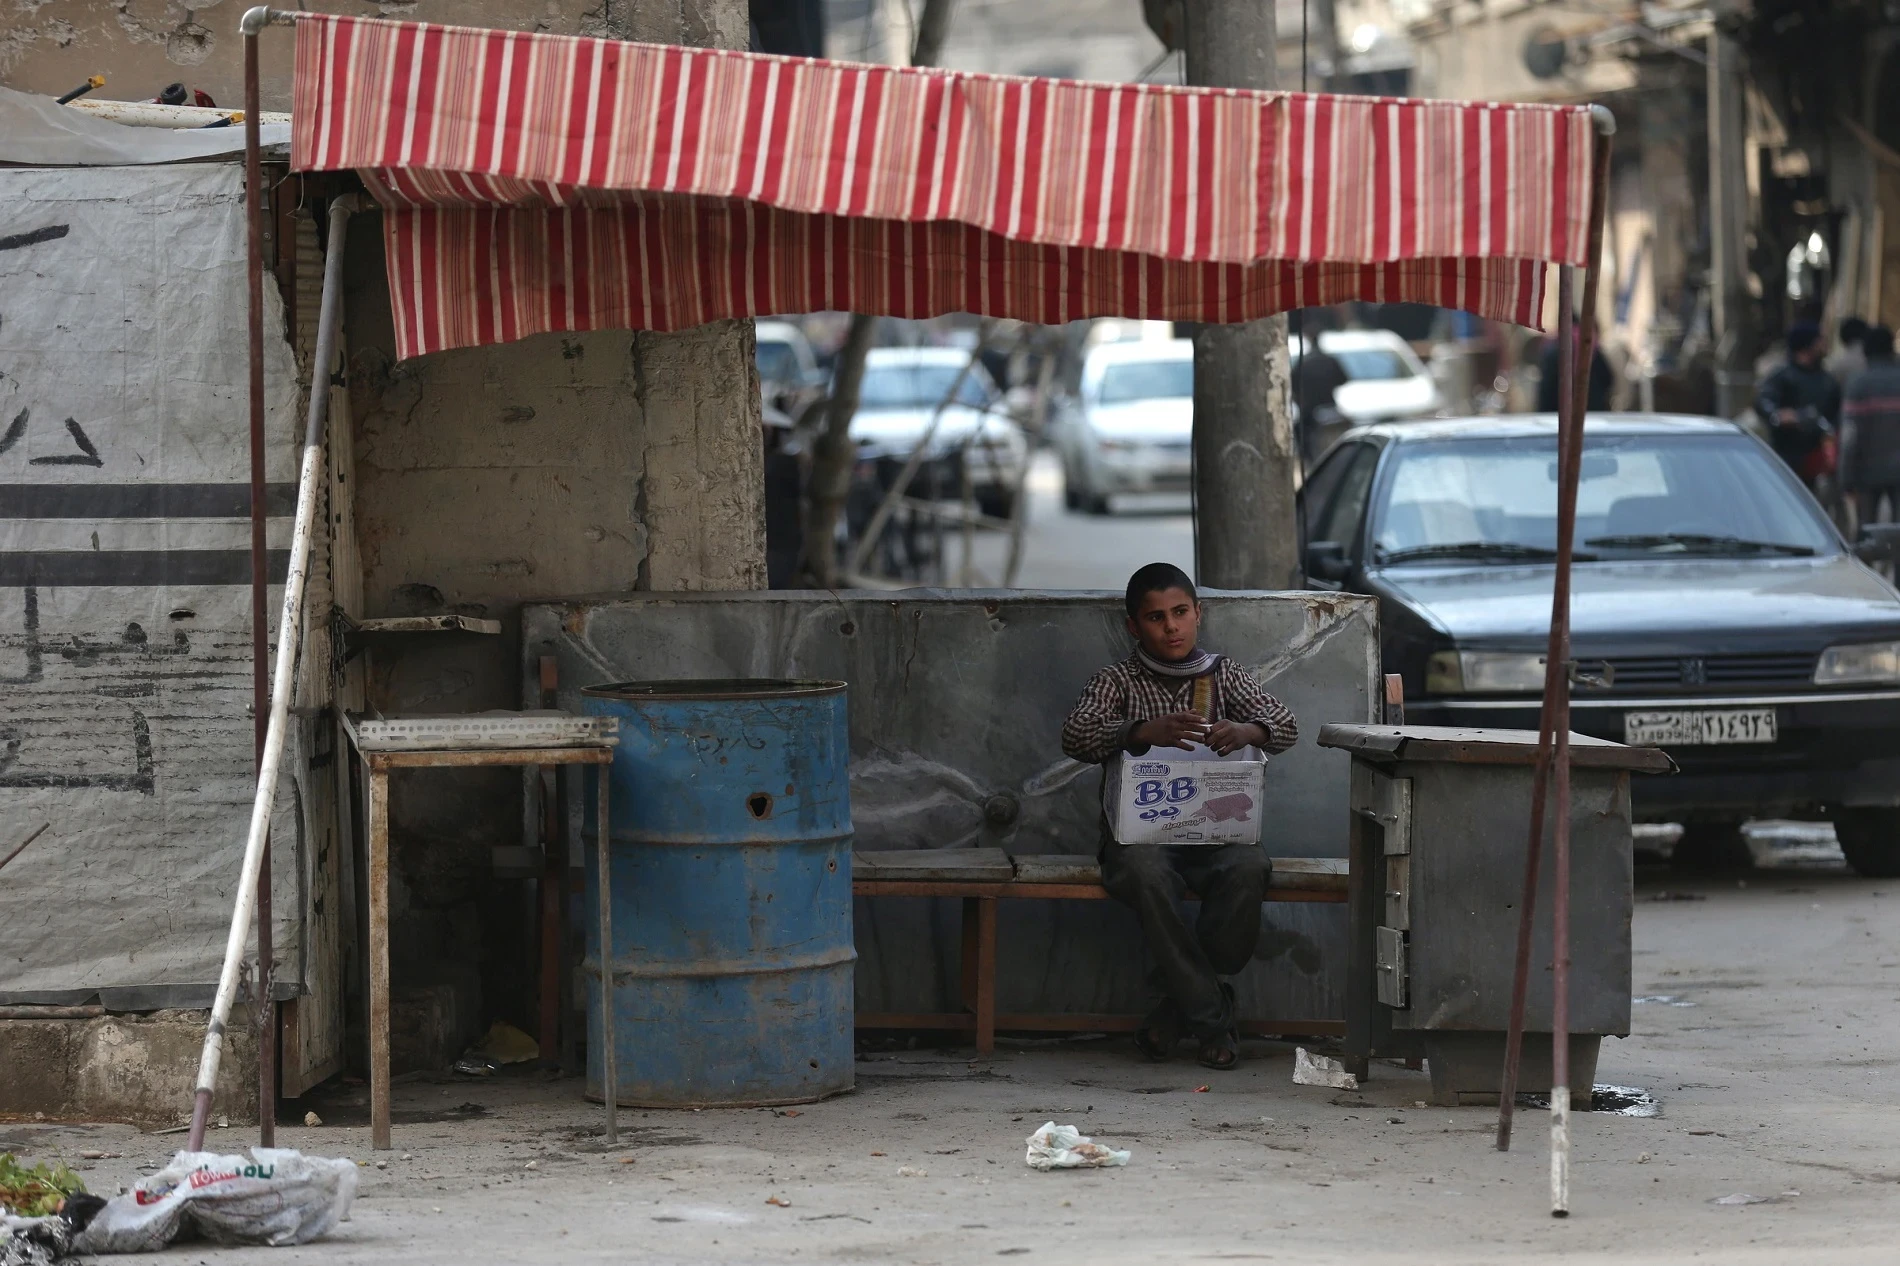 الأزمة الإنسانية في سوريا: 70% يعيشون تحت خط الفقر الدولي، و30% يواجهون الفقر المدقع